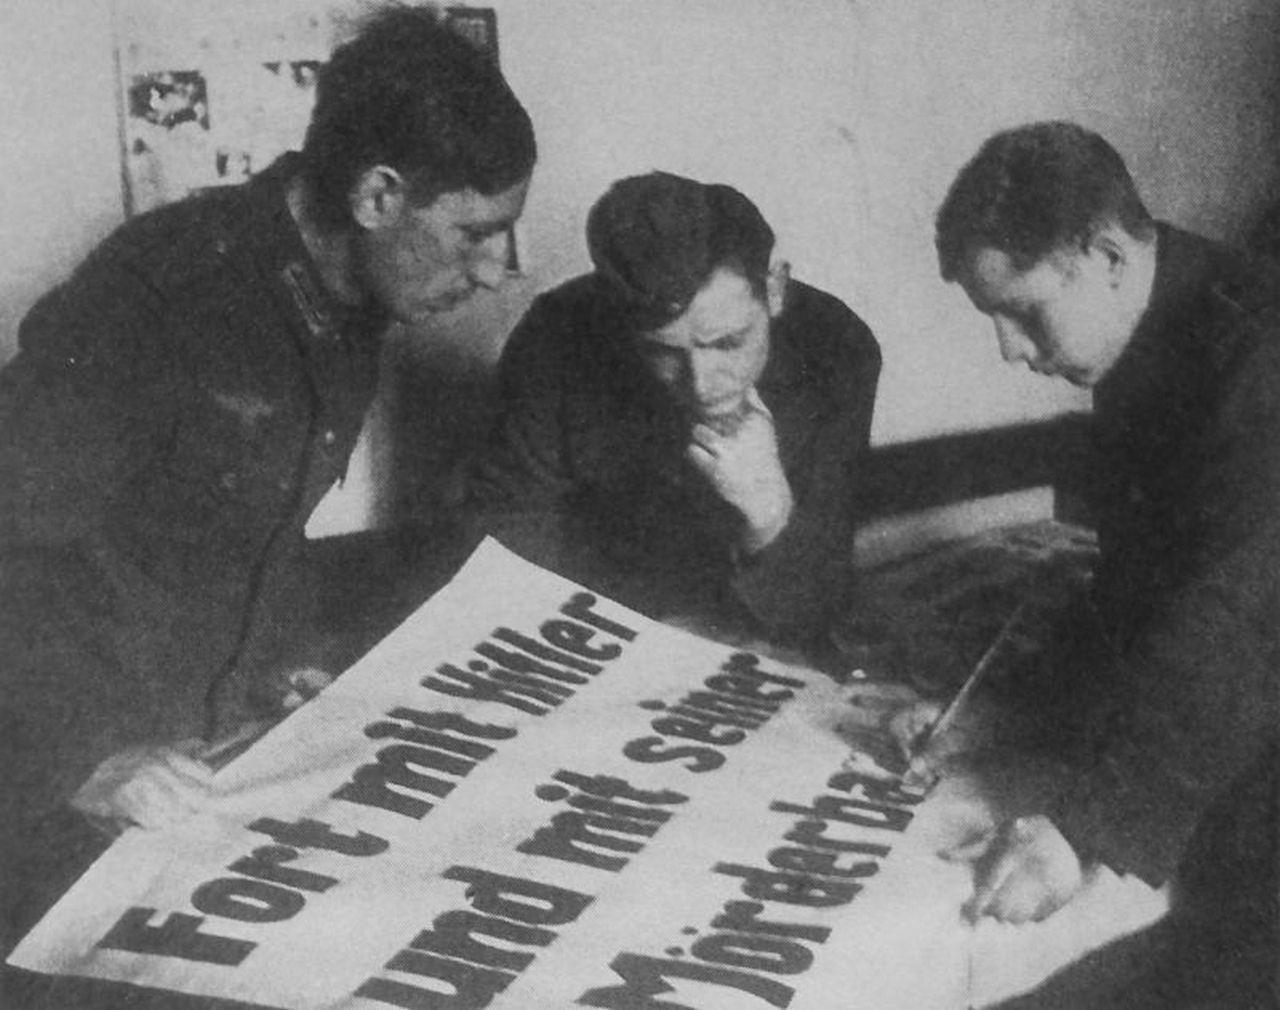 Военнопленные готовят агитплакат в лагере. Надпись на плакате - «Долой Гитлера и его банду убийц!».